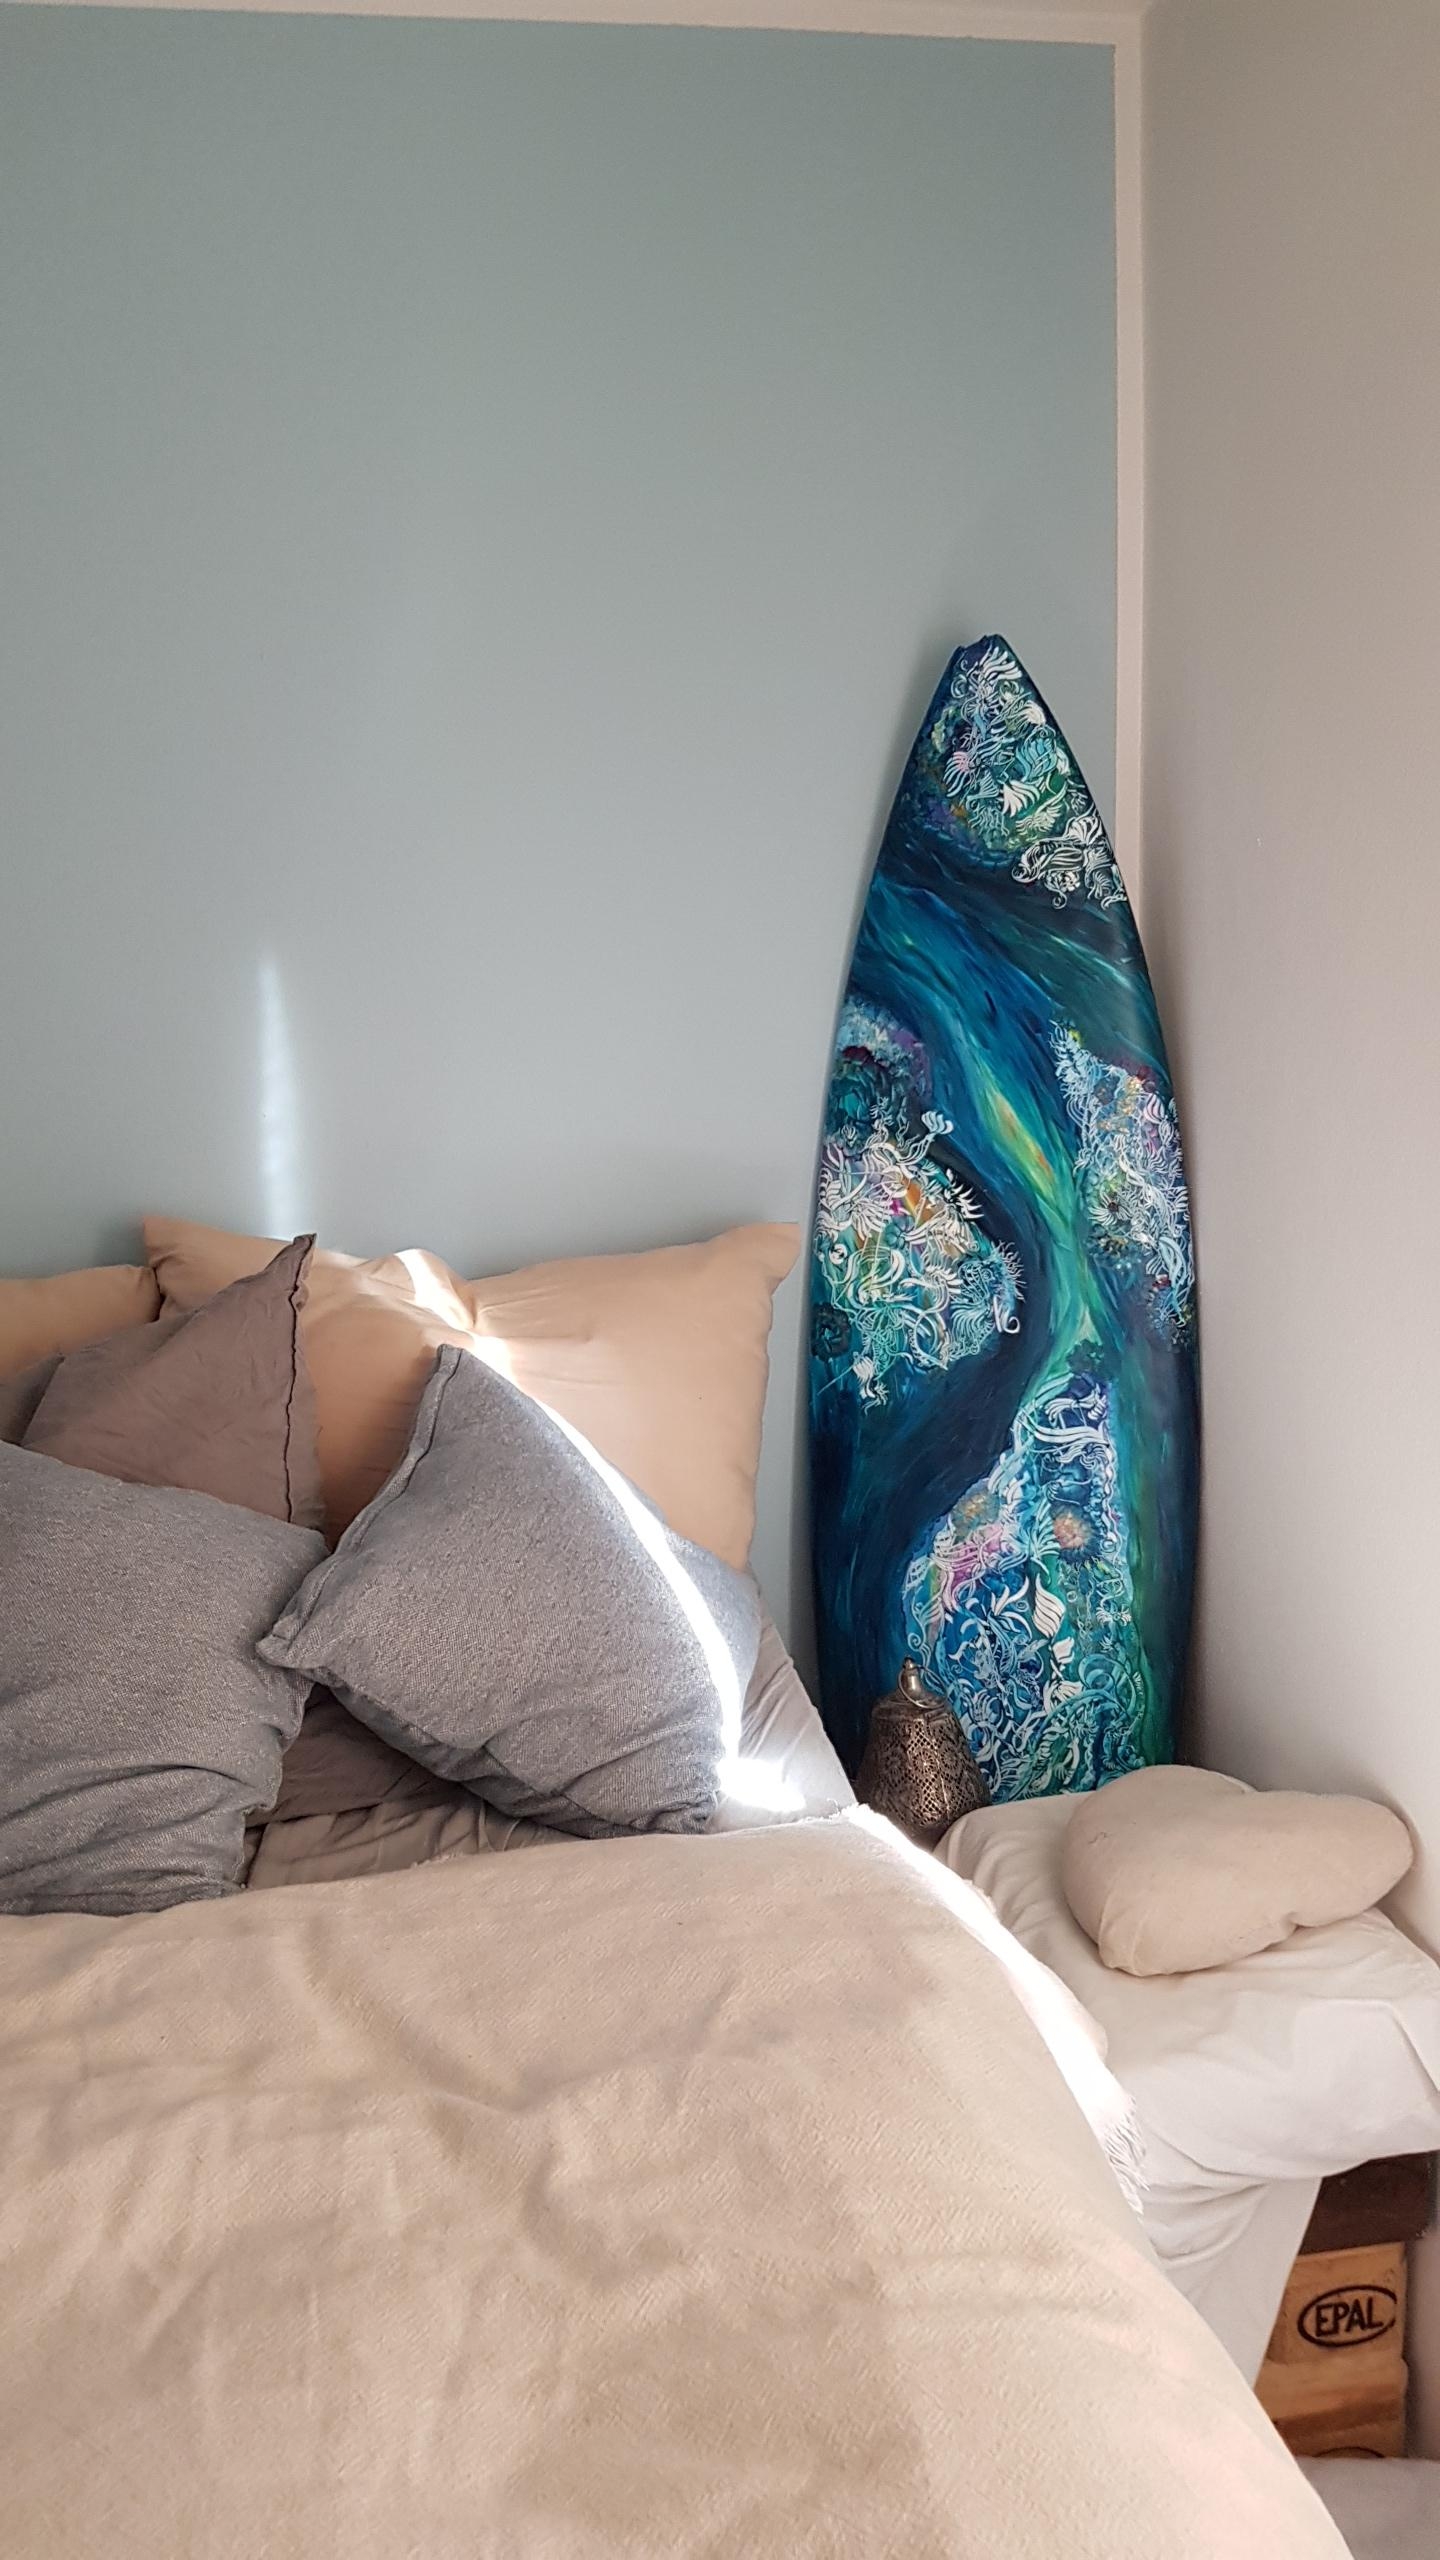 Immer zu diesen Farben aufwachen 💙🌊❤️ #schlafzimmer #surfart #surfboard #dasmeer #bedroomart #home #decorativeart 